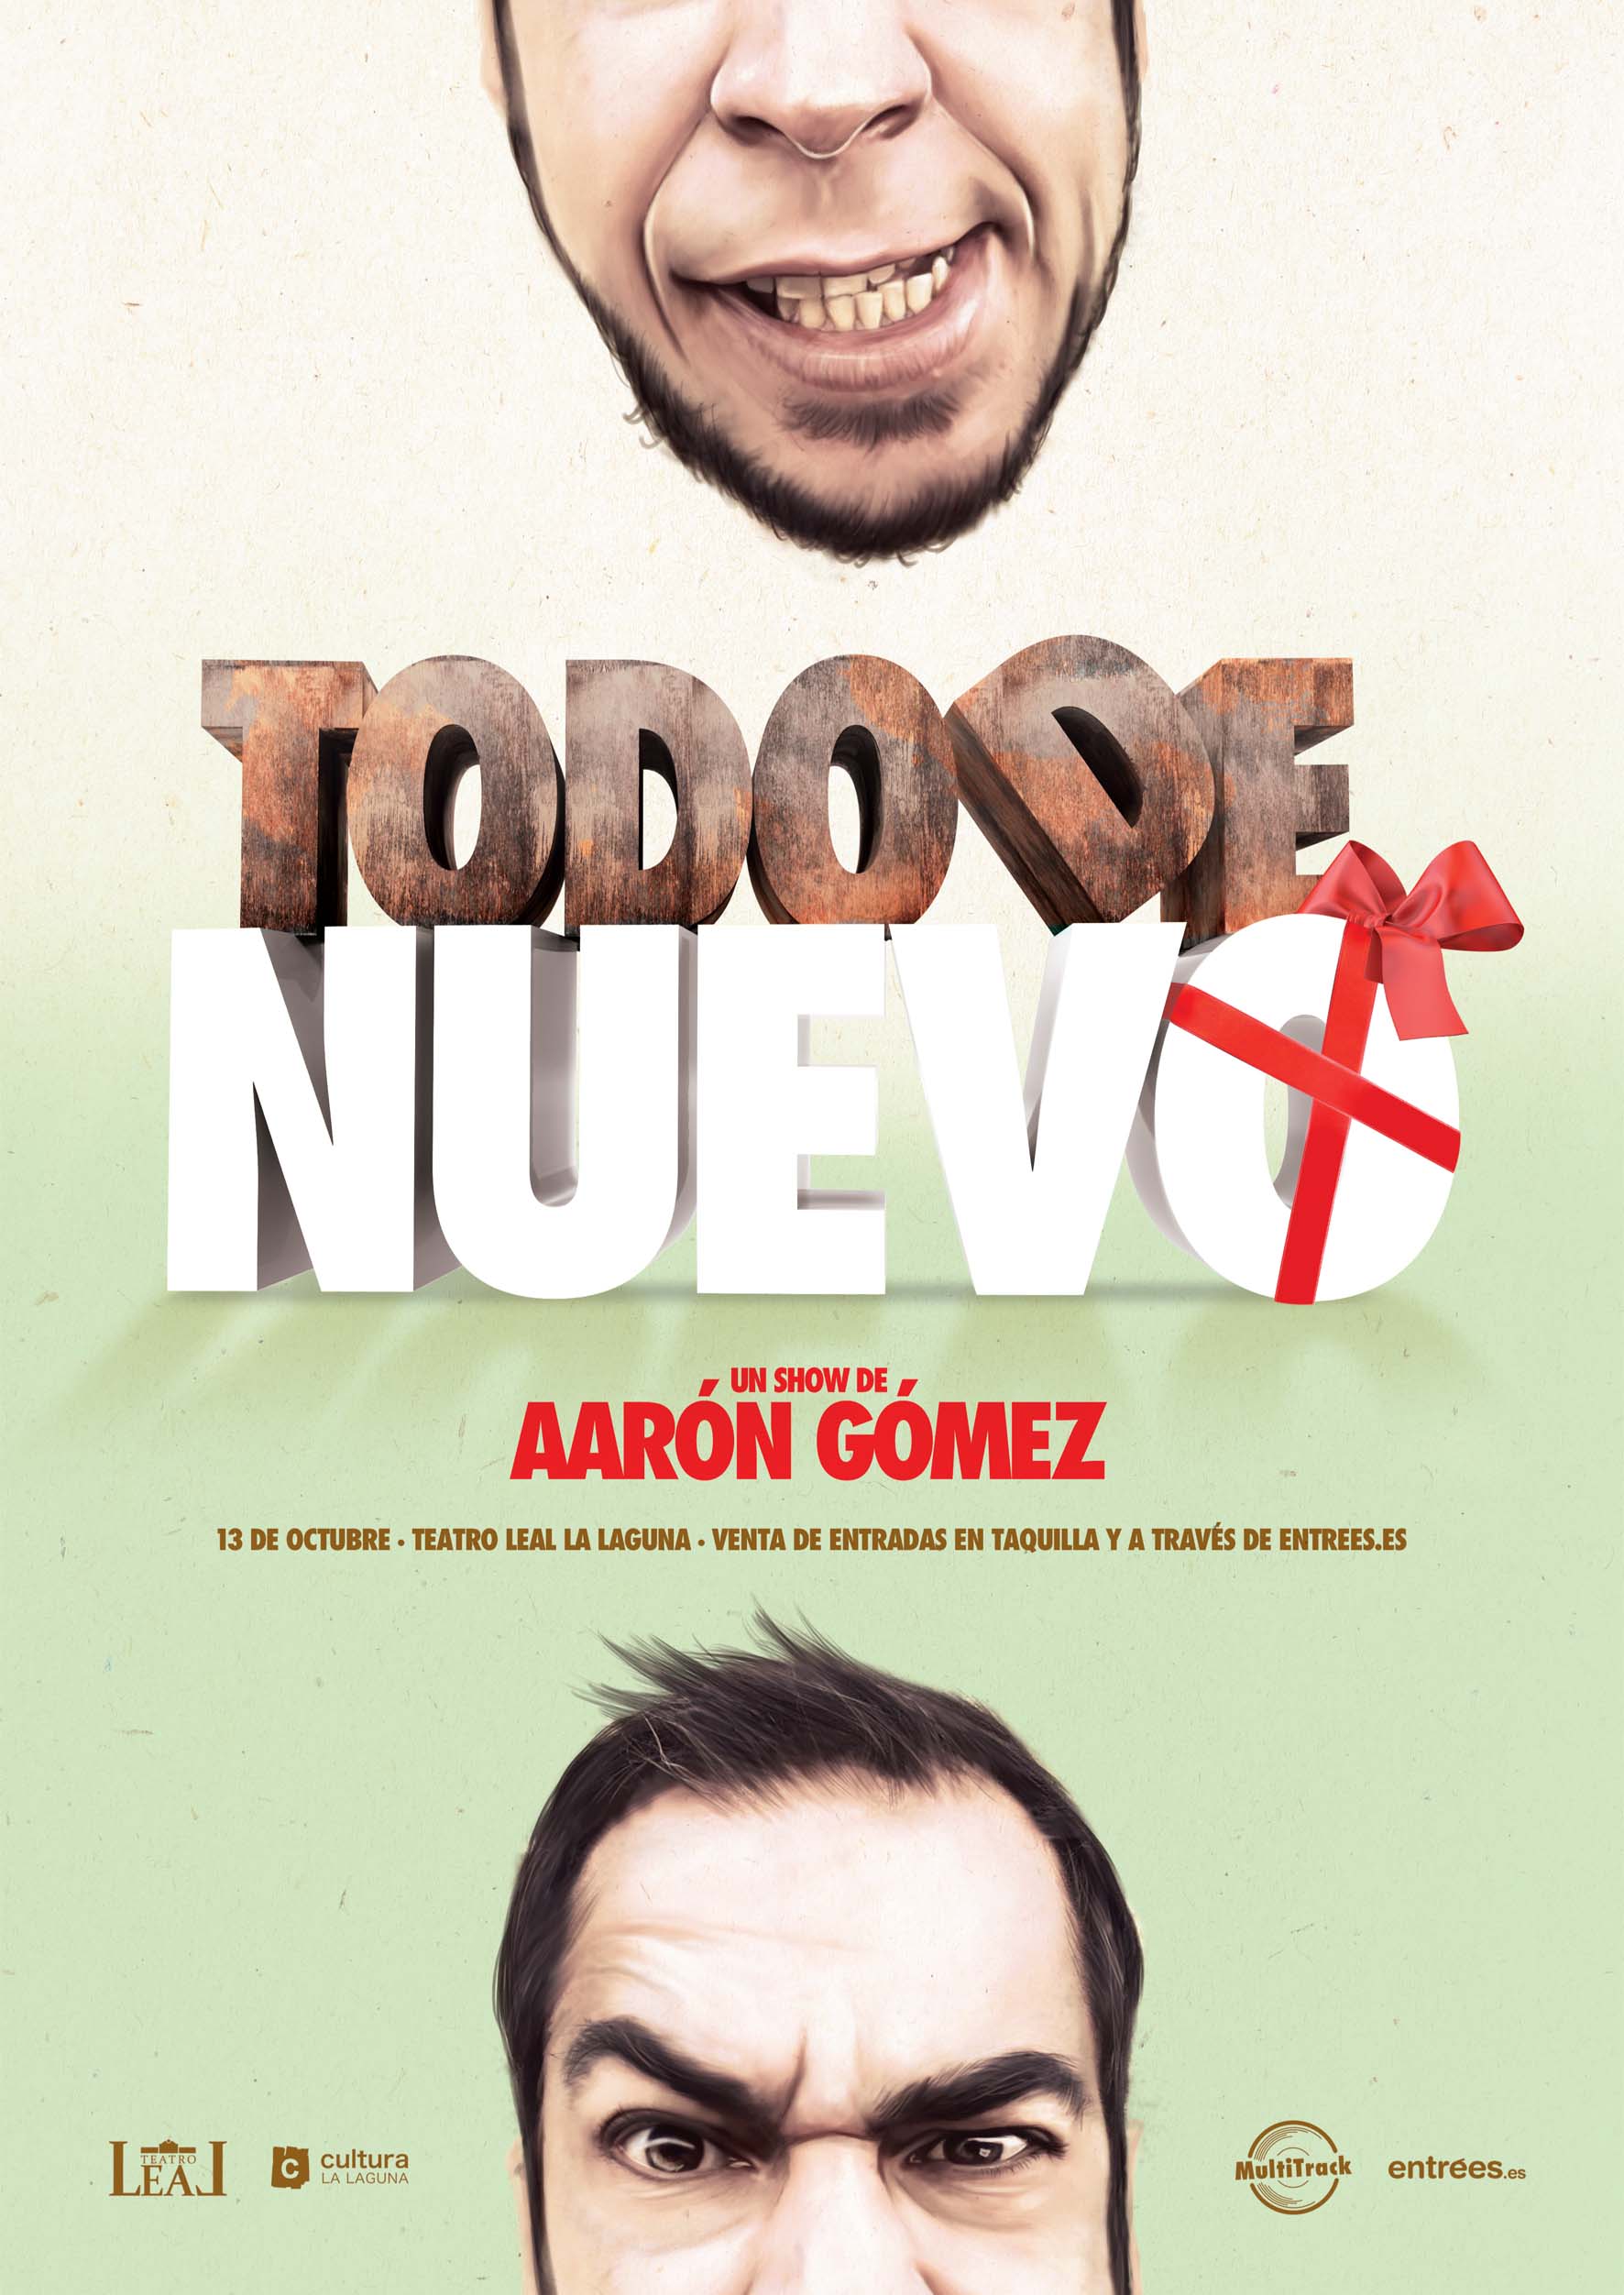 El estreno del nuevo espectáculo de Aarón Gómez será en el Teatro Leal